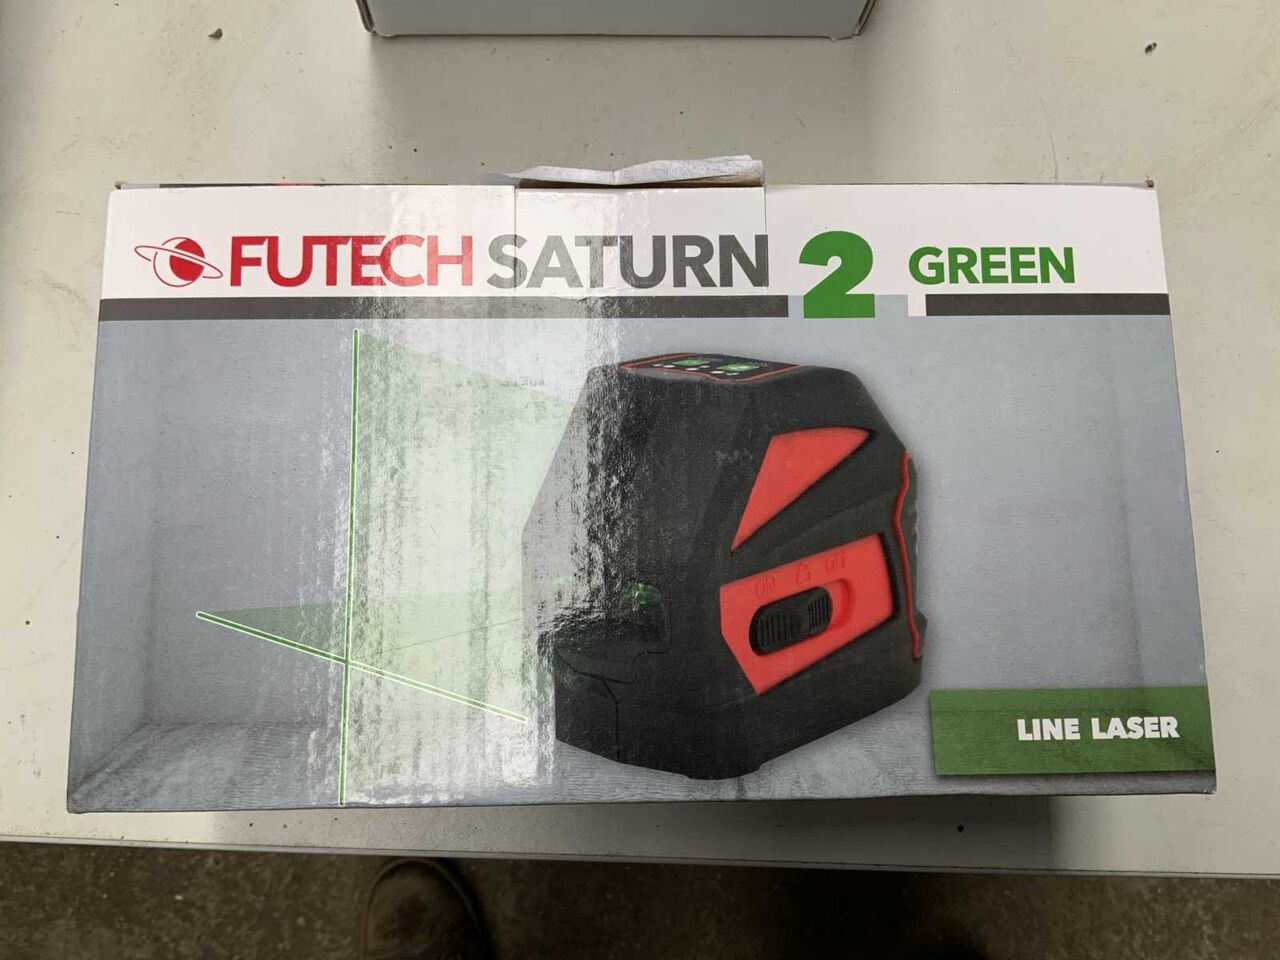 измерительный инструмент Futech Saturn 2 green